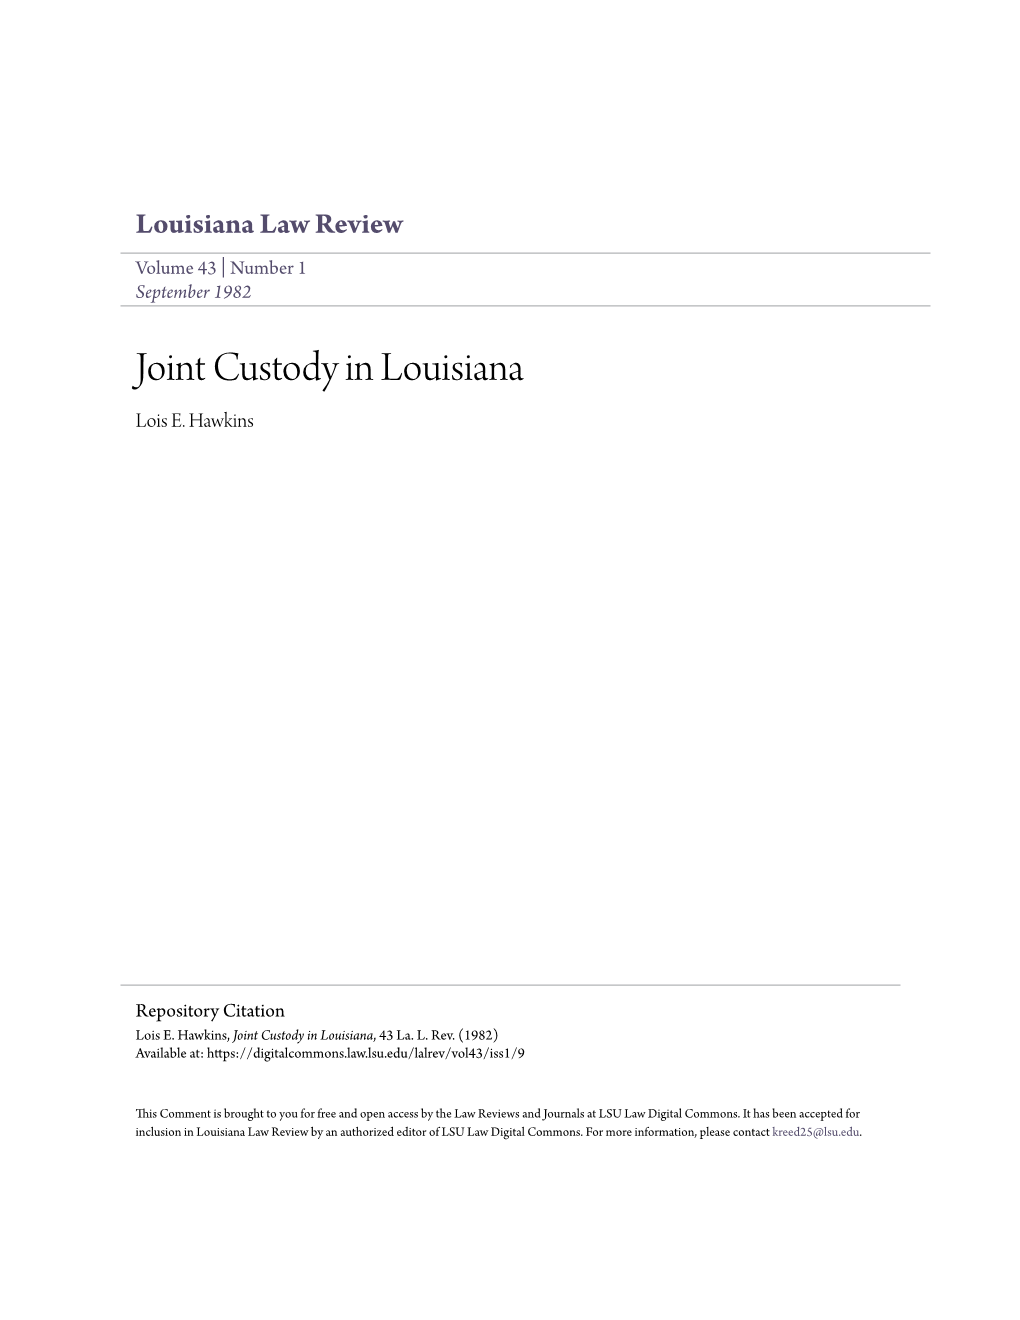 Joint Custody in Louisiana Lois E